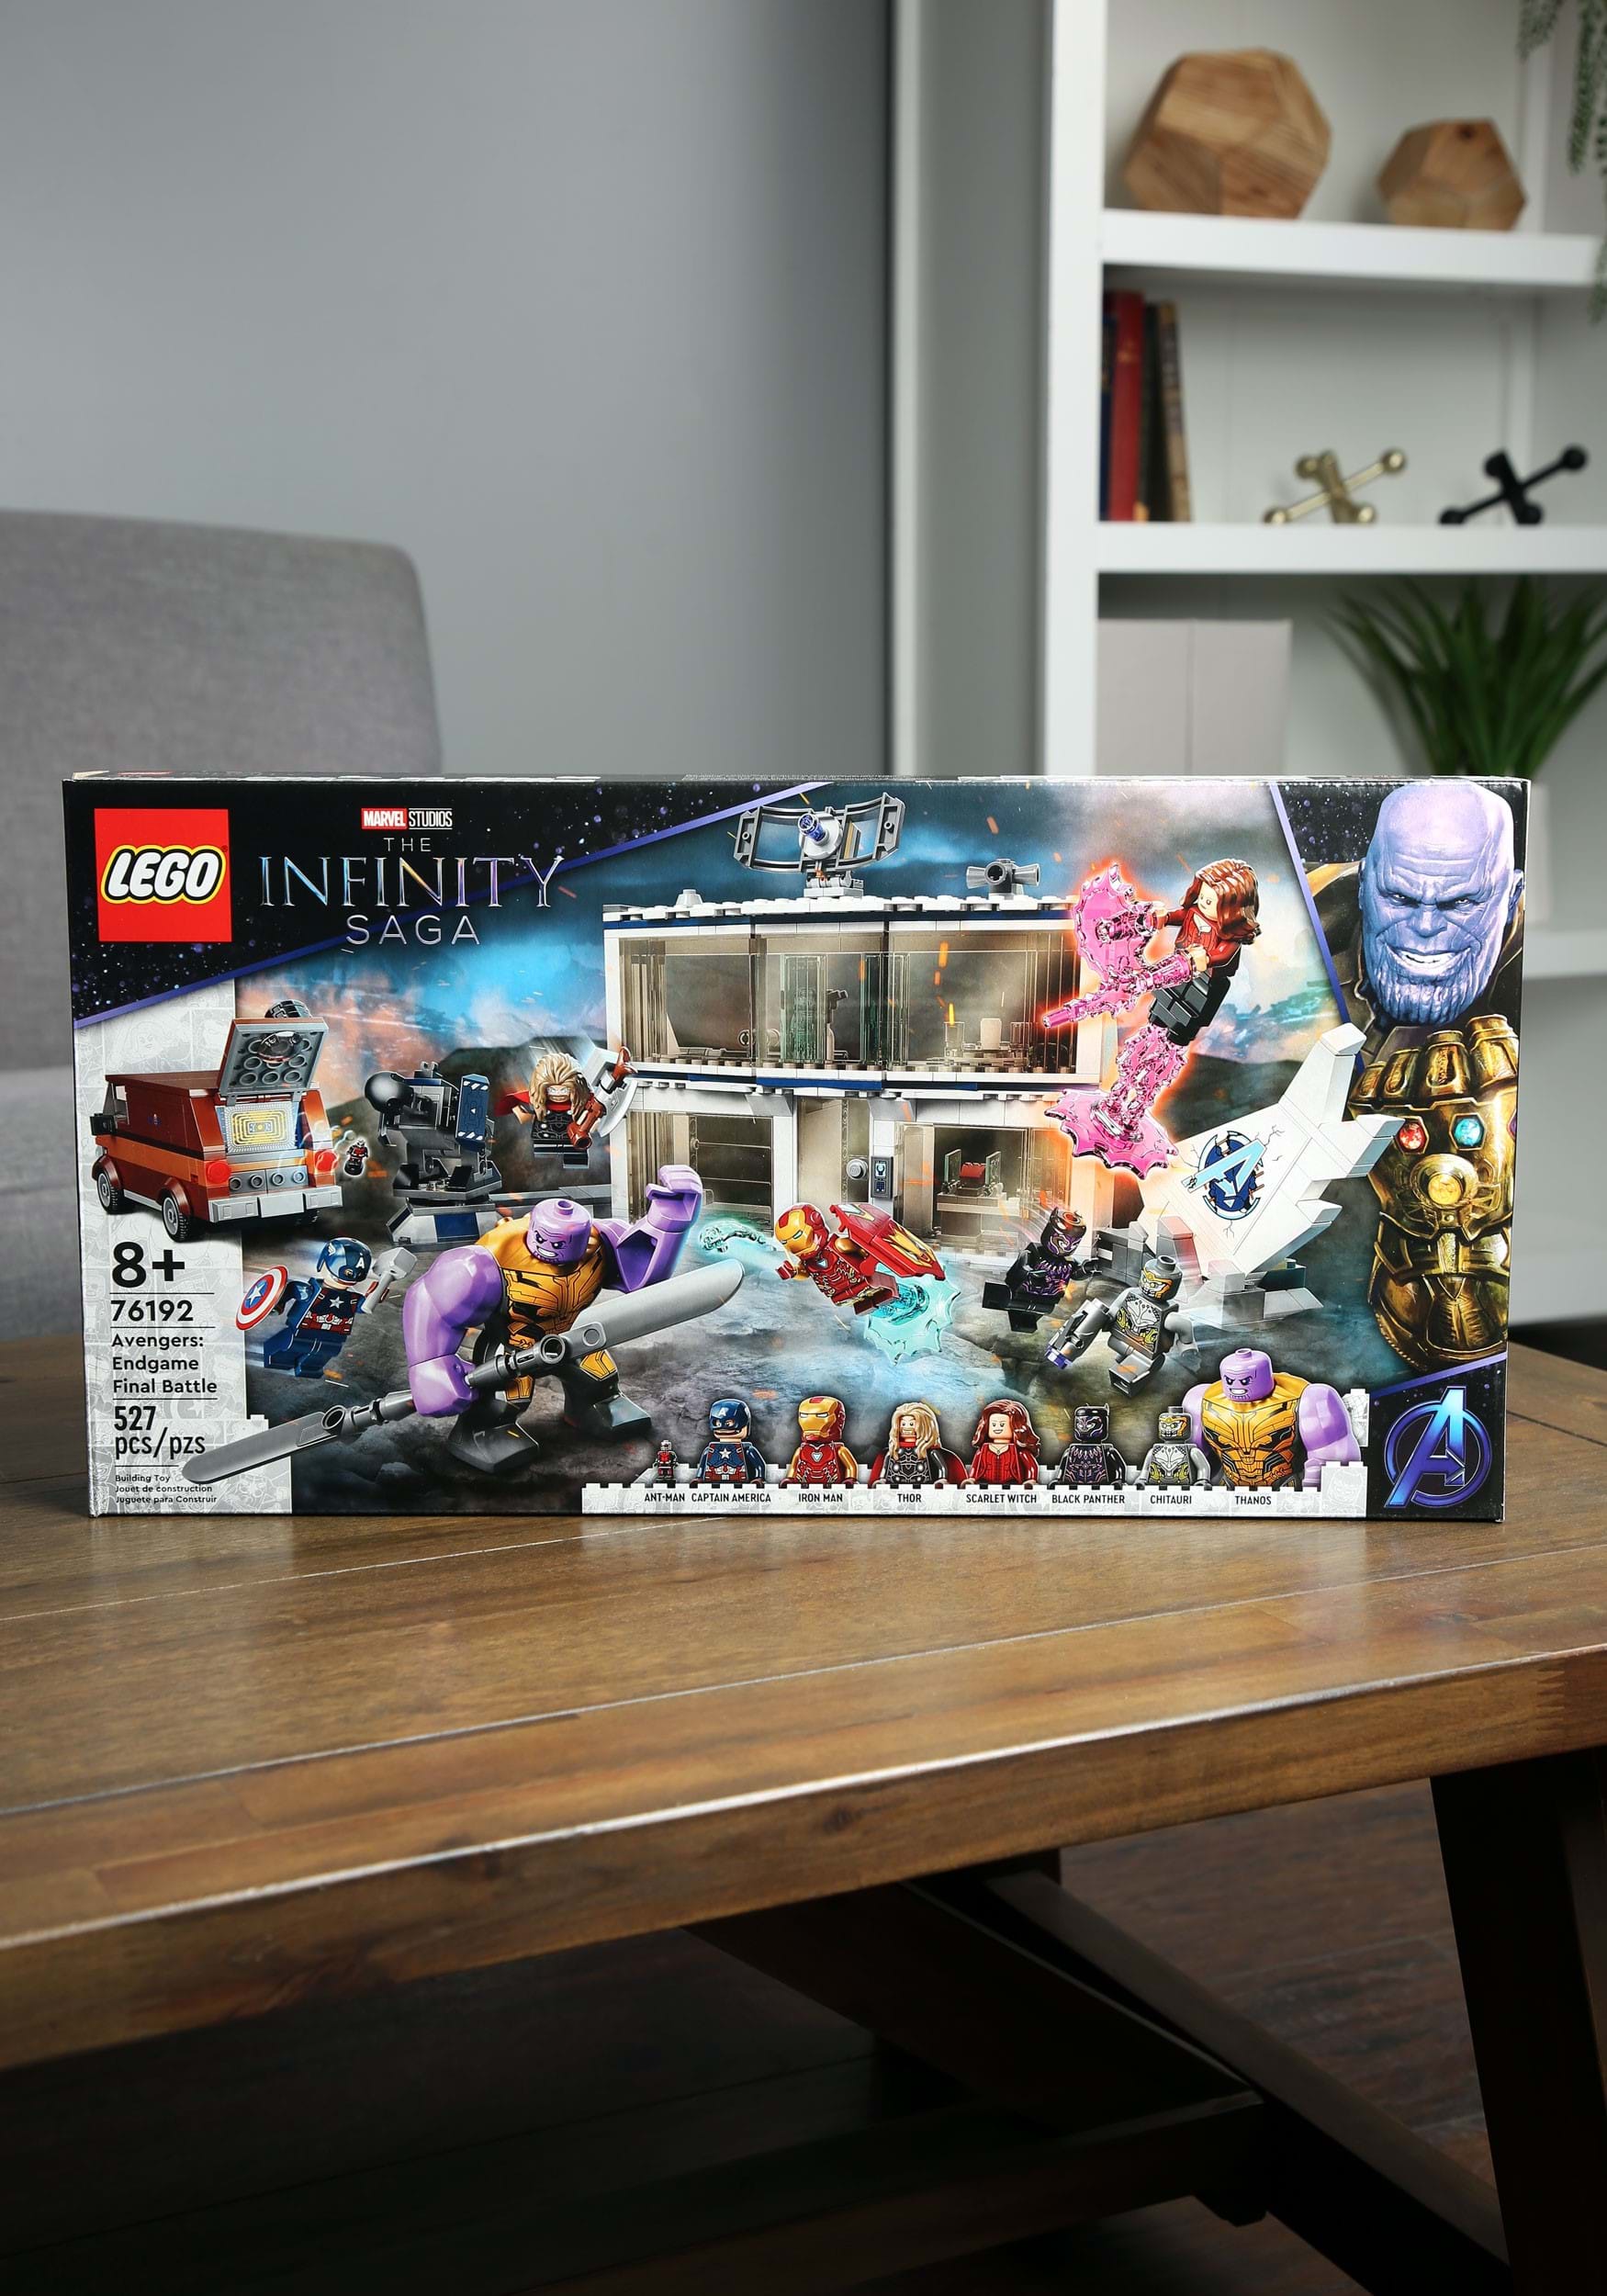 Marvel Infinity Saga Avengers: Endgame Final Battle Building Set from LEGO